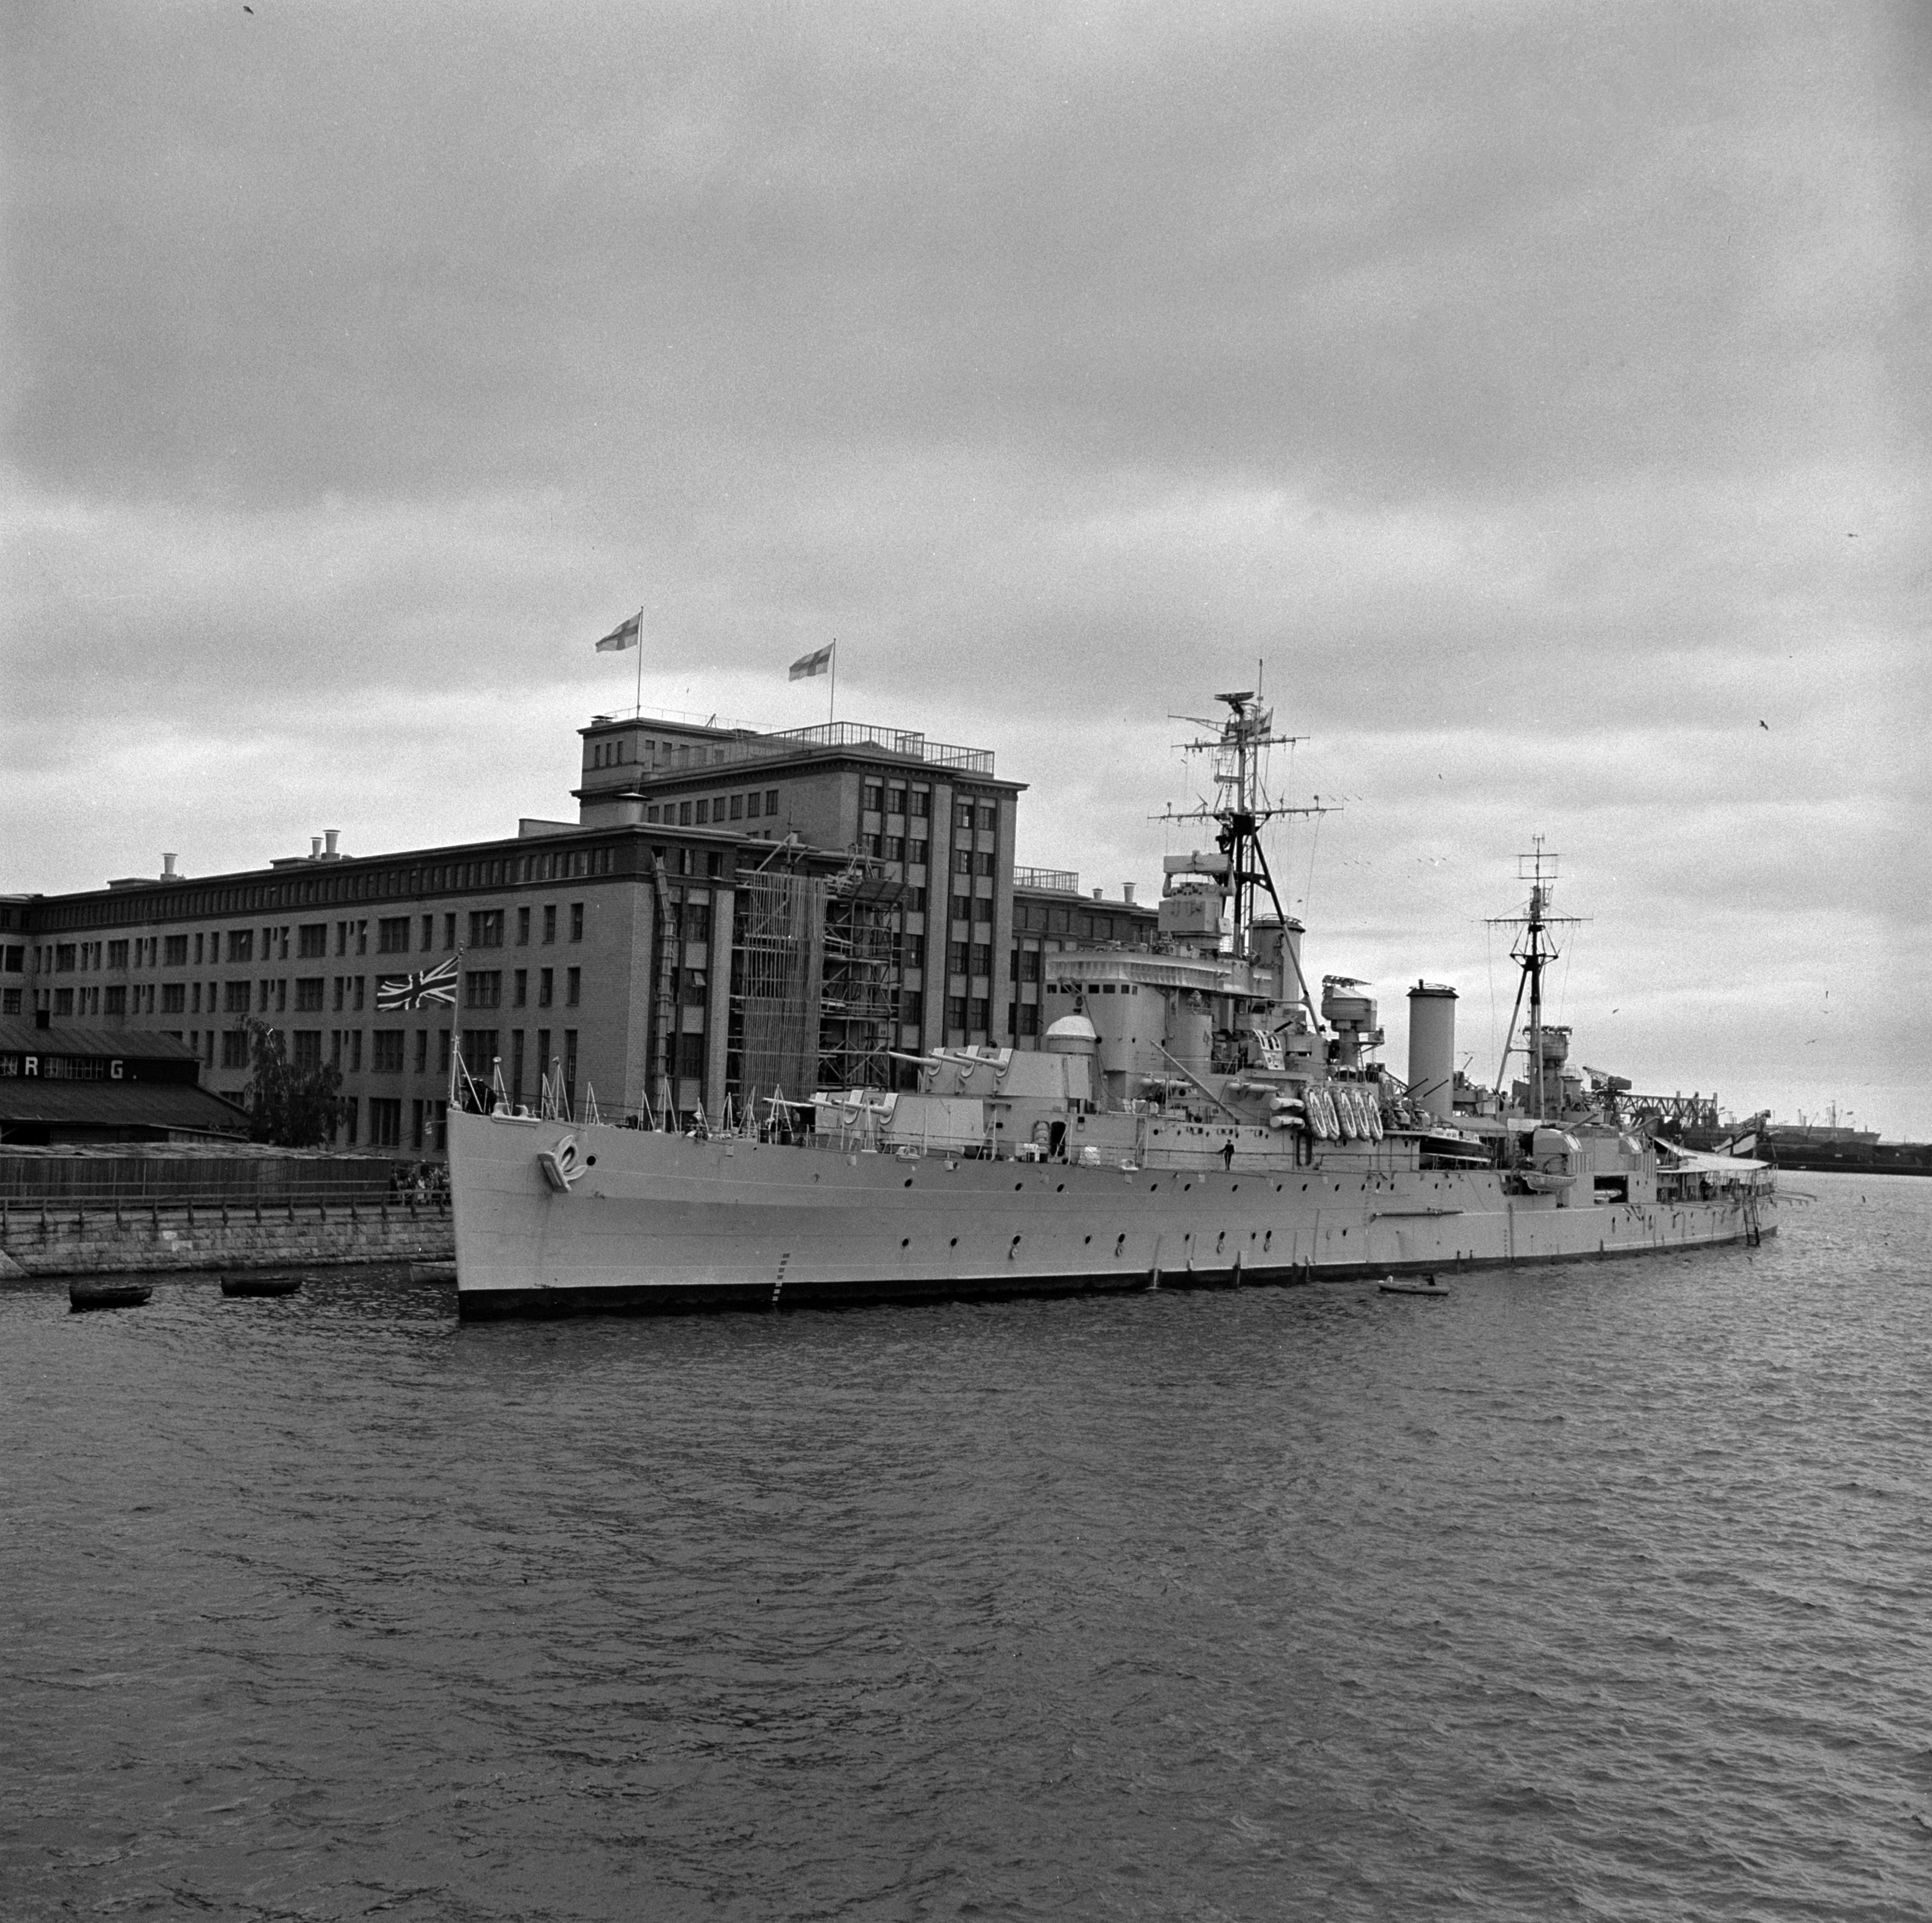 HMS Swiftsure, Ison Britannian Royal Navy -alus, joka saattoi prinssi Philipiä tämän matkalla Helsingin olympialaisiin. Alus on ankkurissa Kaapelitehtaan edustalla.  (Alus oli toiminut sota-aluksena Kaukoidässä toisessa maailmansodassa.) Edessä Lauttasaarensalmi.  Kaapelitehdas, Tallberginkatu 1.